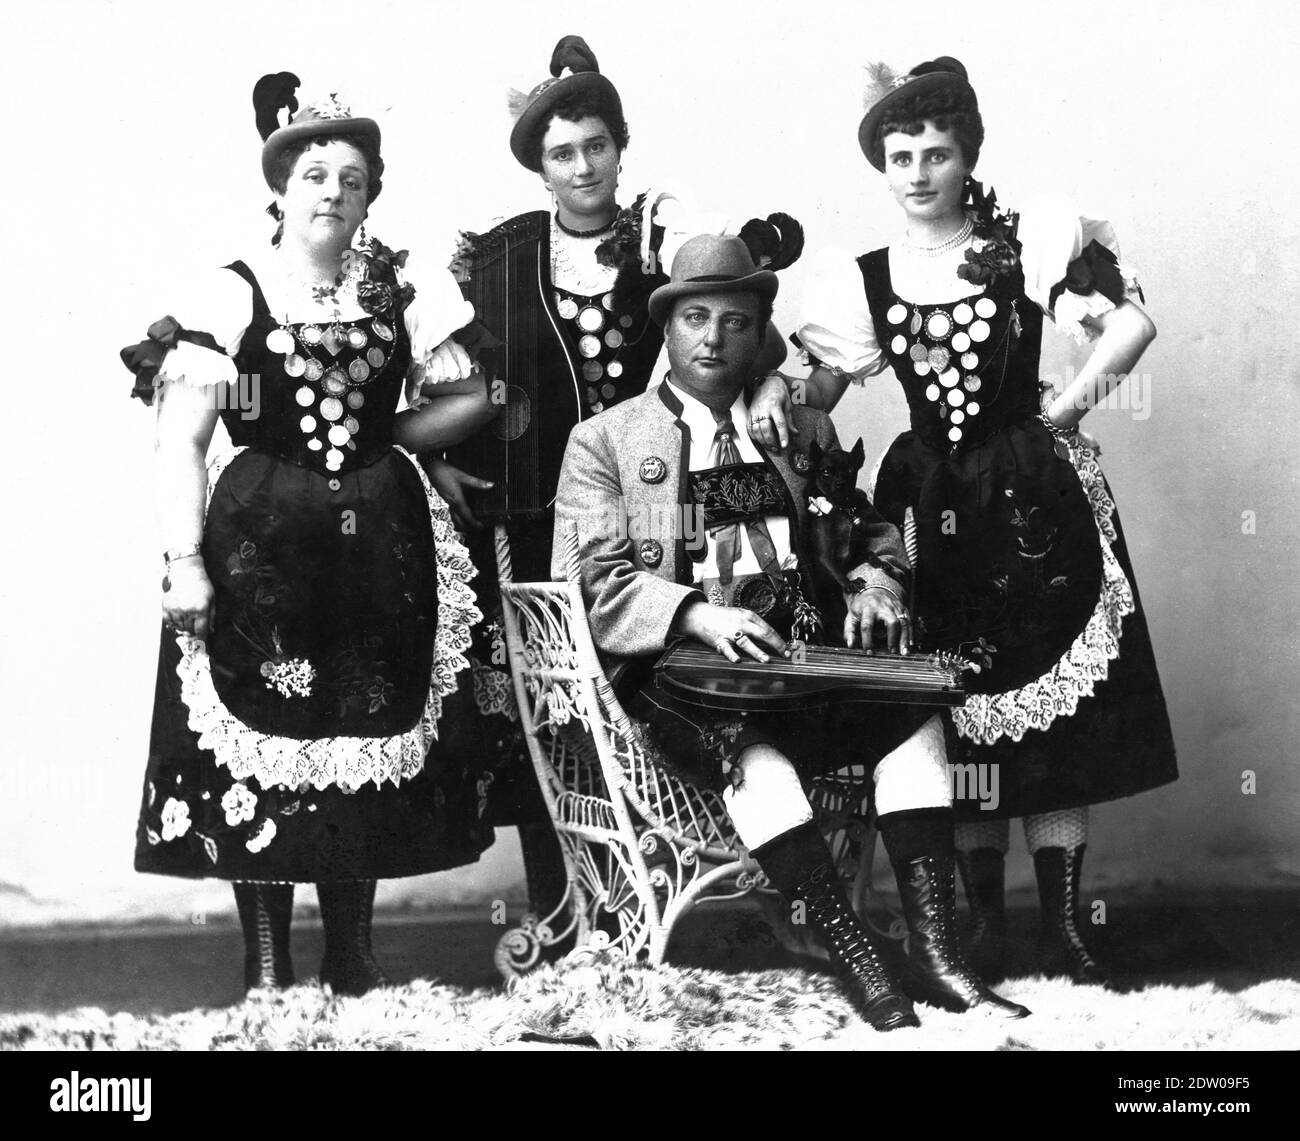 'Les Yodlers alpins de Franz Reilhofer' vers 1885, à Chicago, Illinois, États-Unis. Le groupe de Franz, sous différents noms, a voyagé largement jouer et chanter dans leurs costumes tyroliens. Ils ont joué vaudeville et toutes sortes d'événements locaux tels que des spectacles de musique, des fêtes de ville, etc. De même que beaucoup d'artistes de cirque, ce groupe musical a porté beaucoup de photos à vendre aux membres de l'auditoire pour compléter leurs revenus de performance. Cette photo se trouve sur une carte de couleur crème. Pour voir mes autres images liées à la musique, recherchez: Prestor vintage Music Banque D'Images